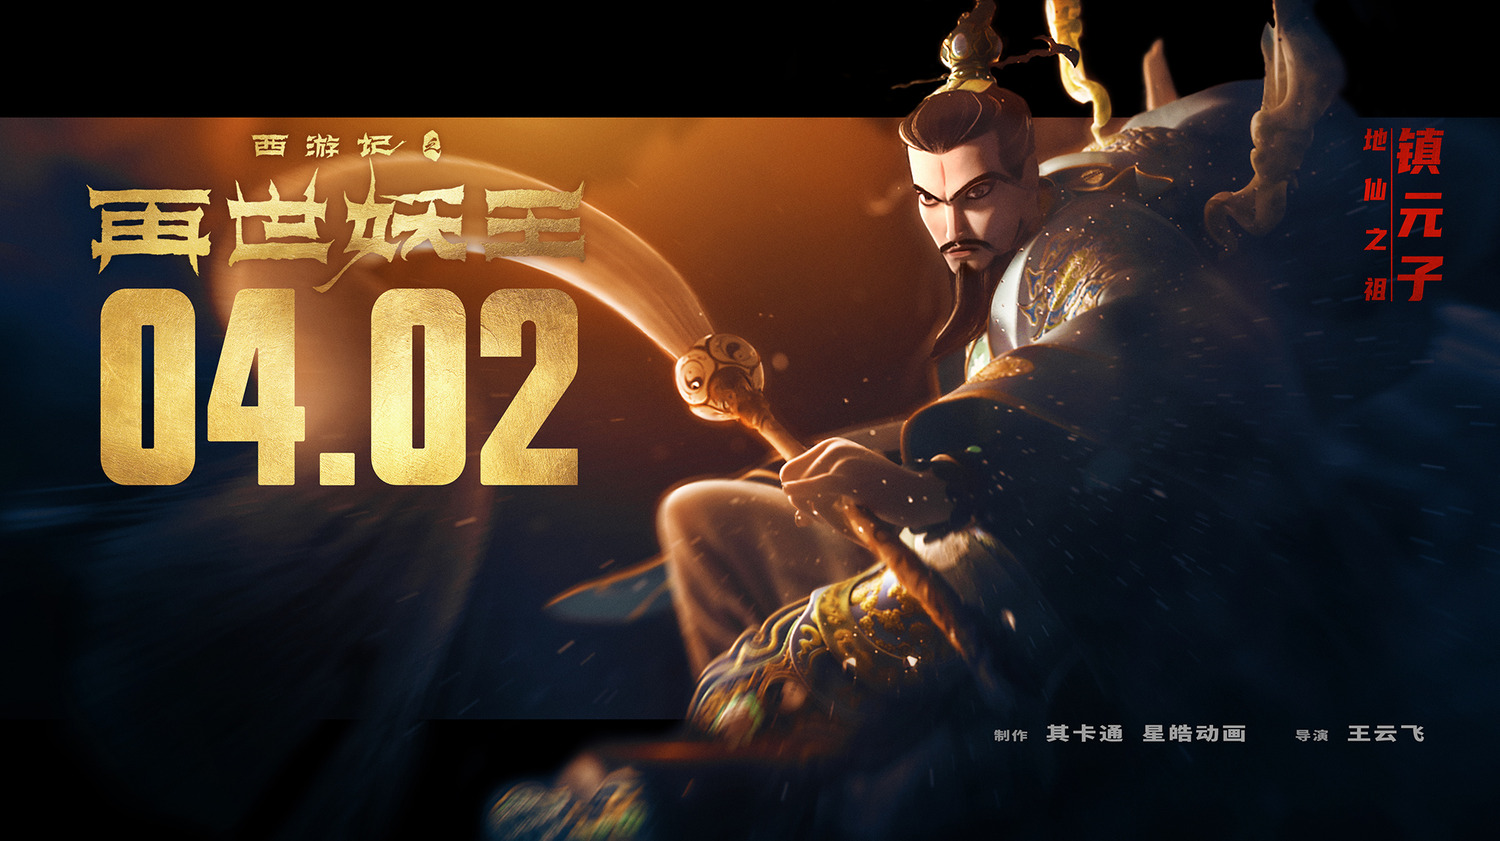 Extra Large Movie Poster Image for Xi You Ji Zhi Zai Shi Yao Wang (#17 of 21)